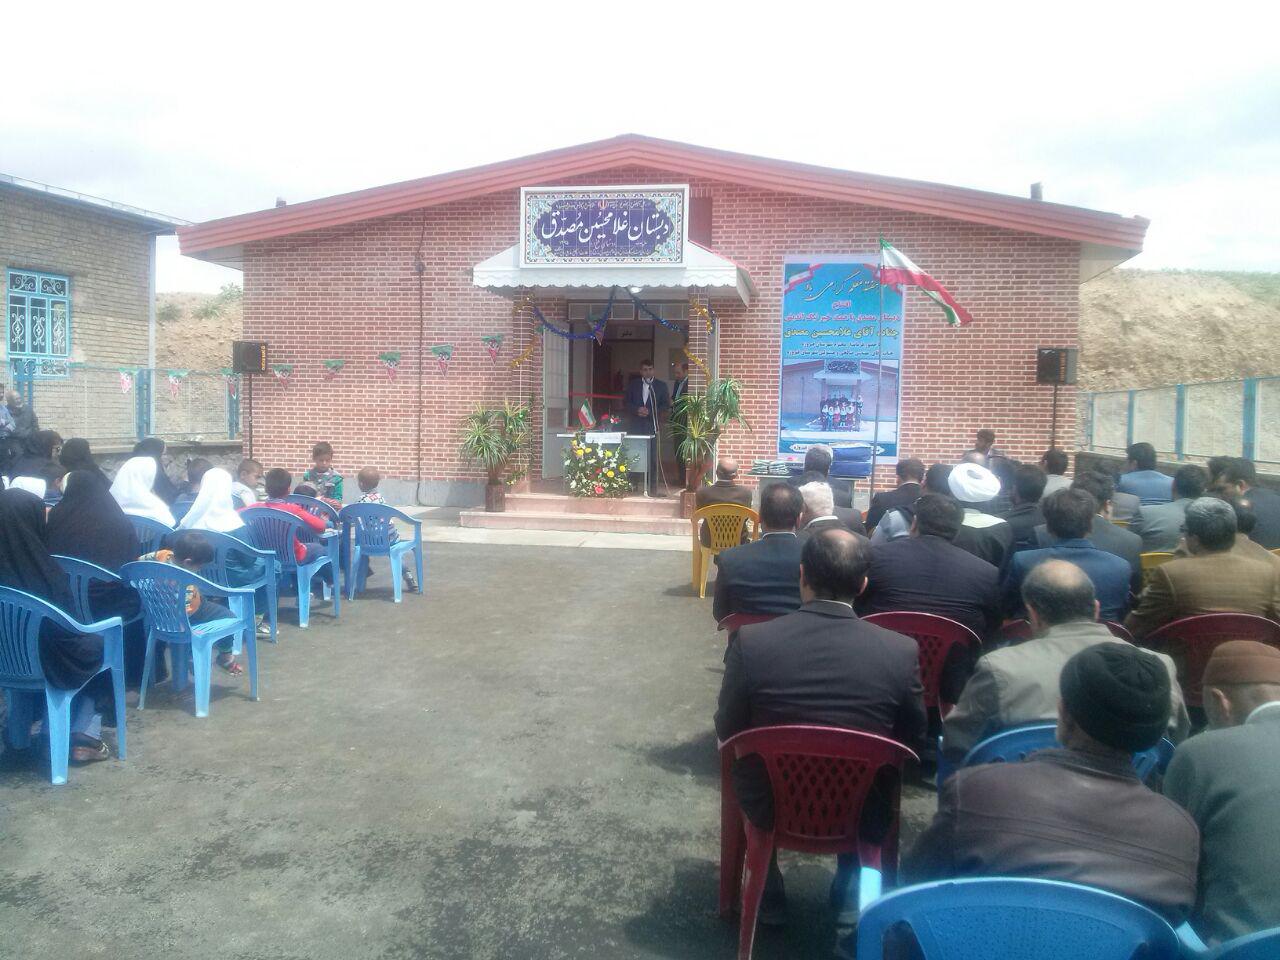 افتتاح آموزشگاه خیرساز با 140 میلیون تومان هزینه در فیروزه